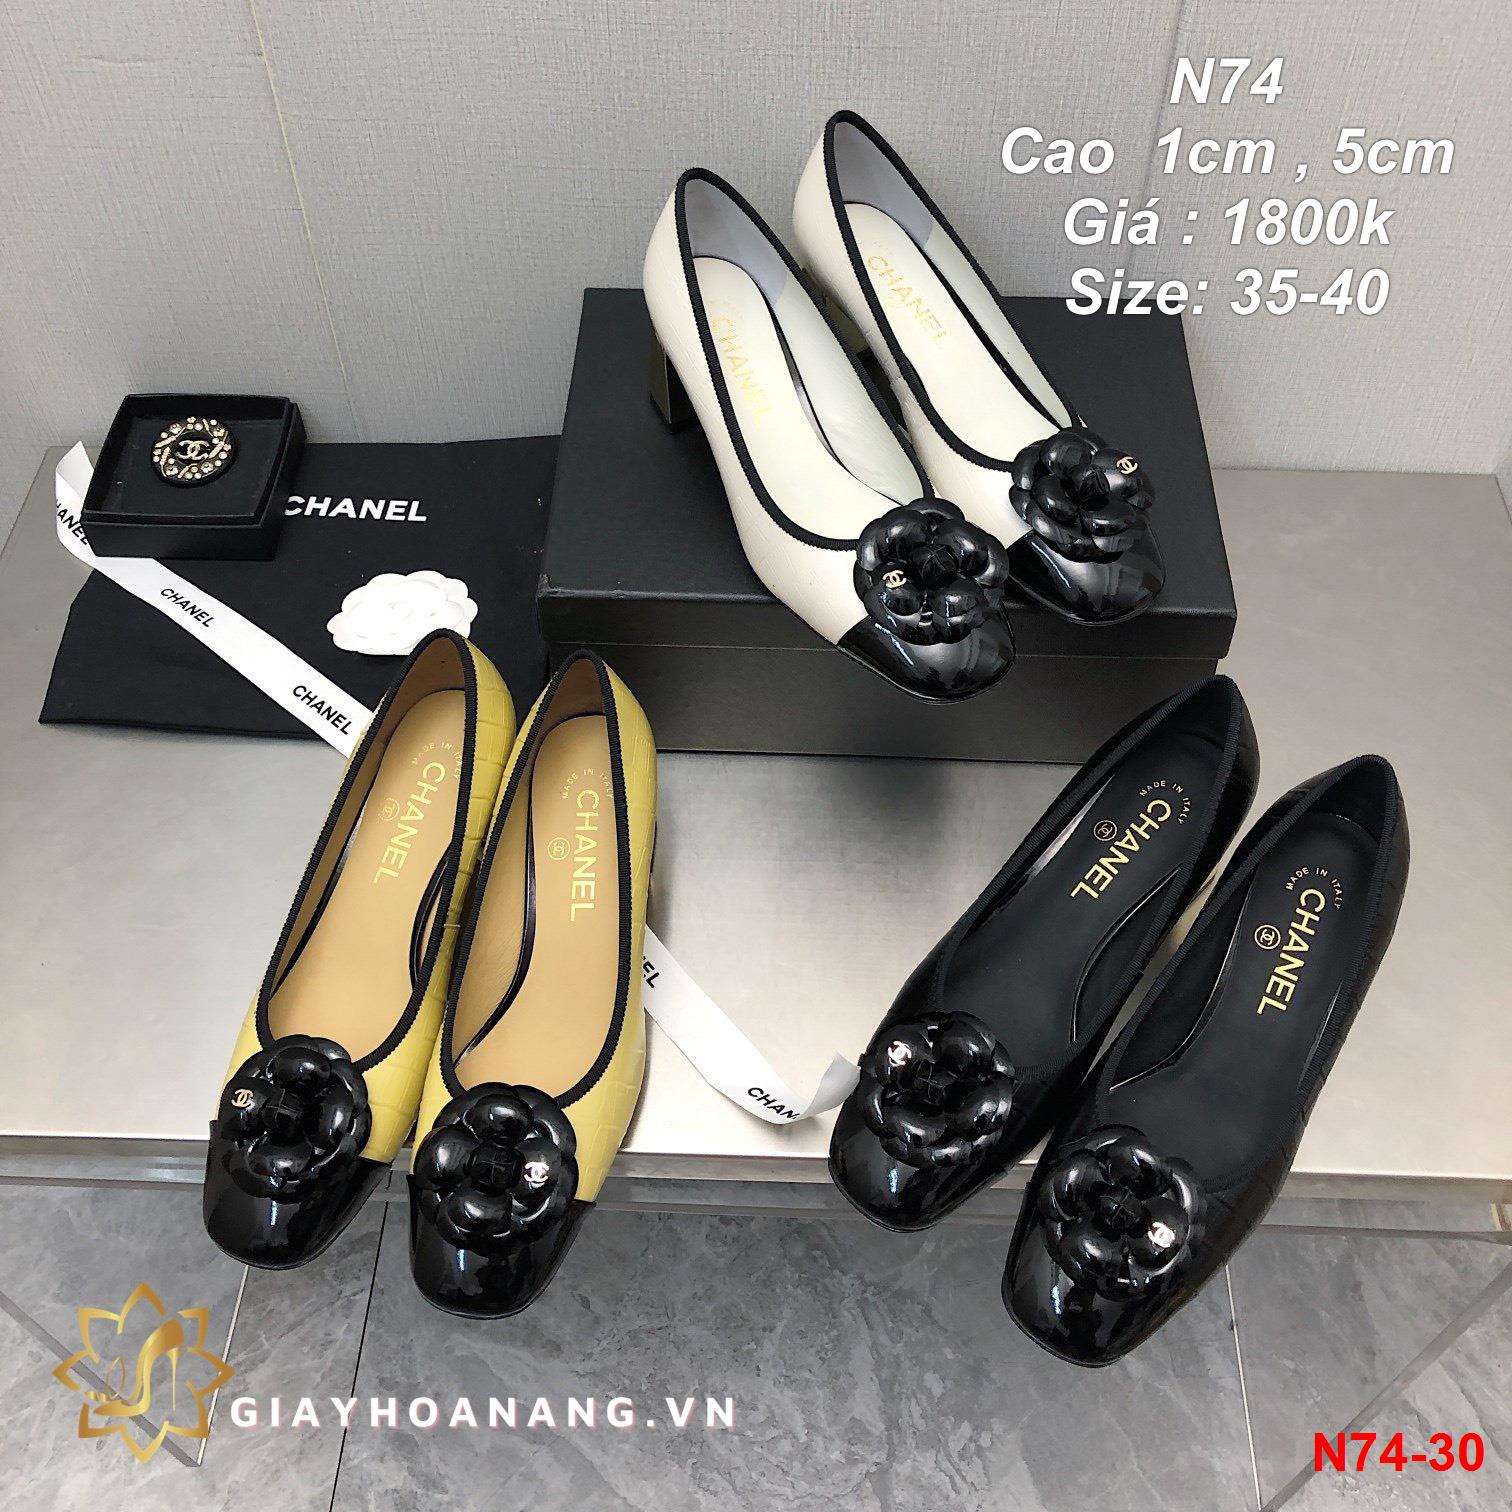 N74-30 Chanel giày cao 1cm , 5cm siêu cấp